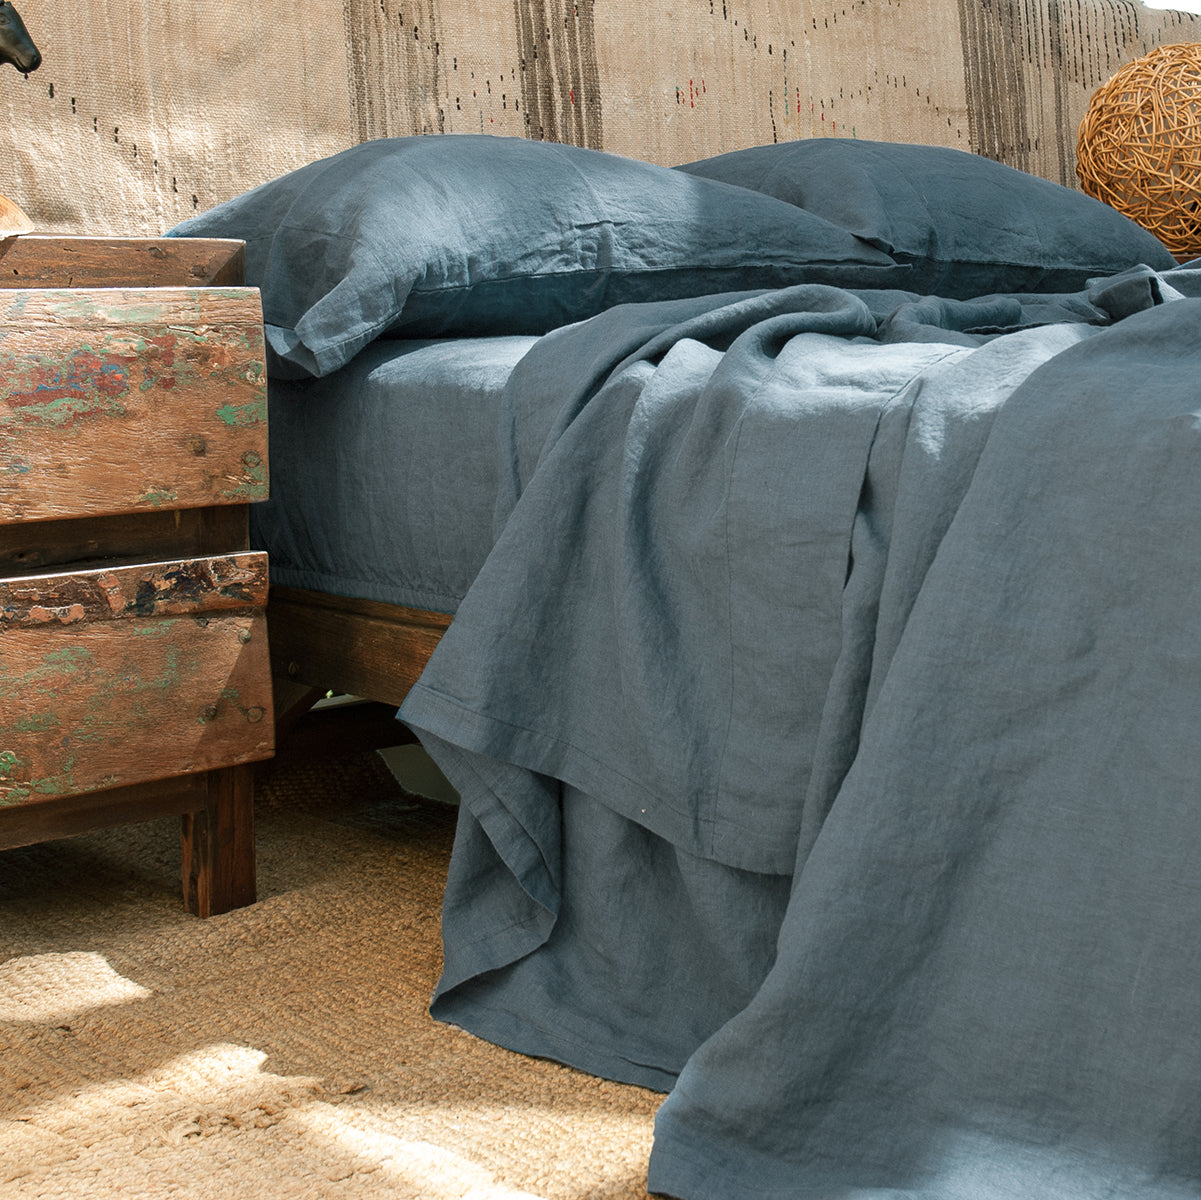 Detalle del juego de sábanas de lino azul. Bajera, encimera y almohadas a juego.